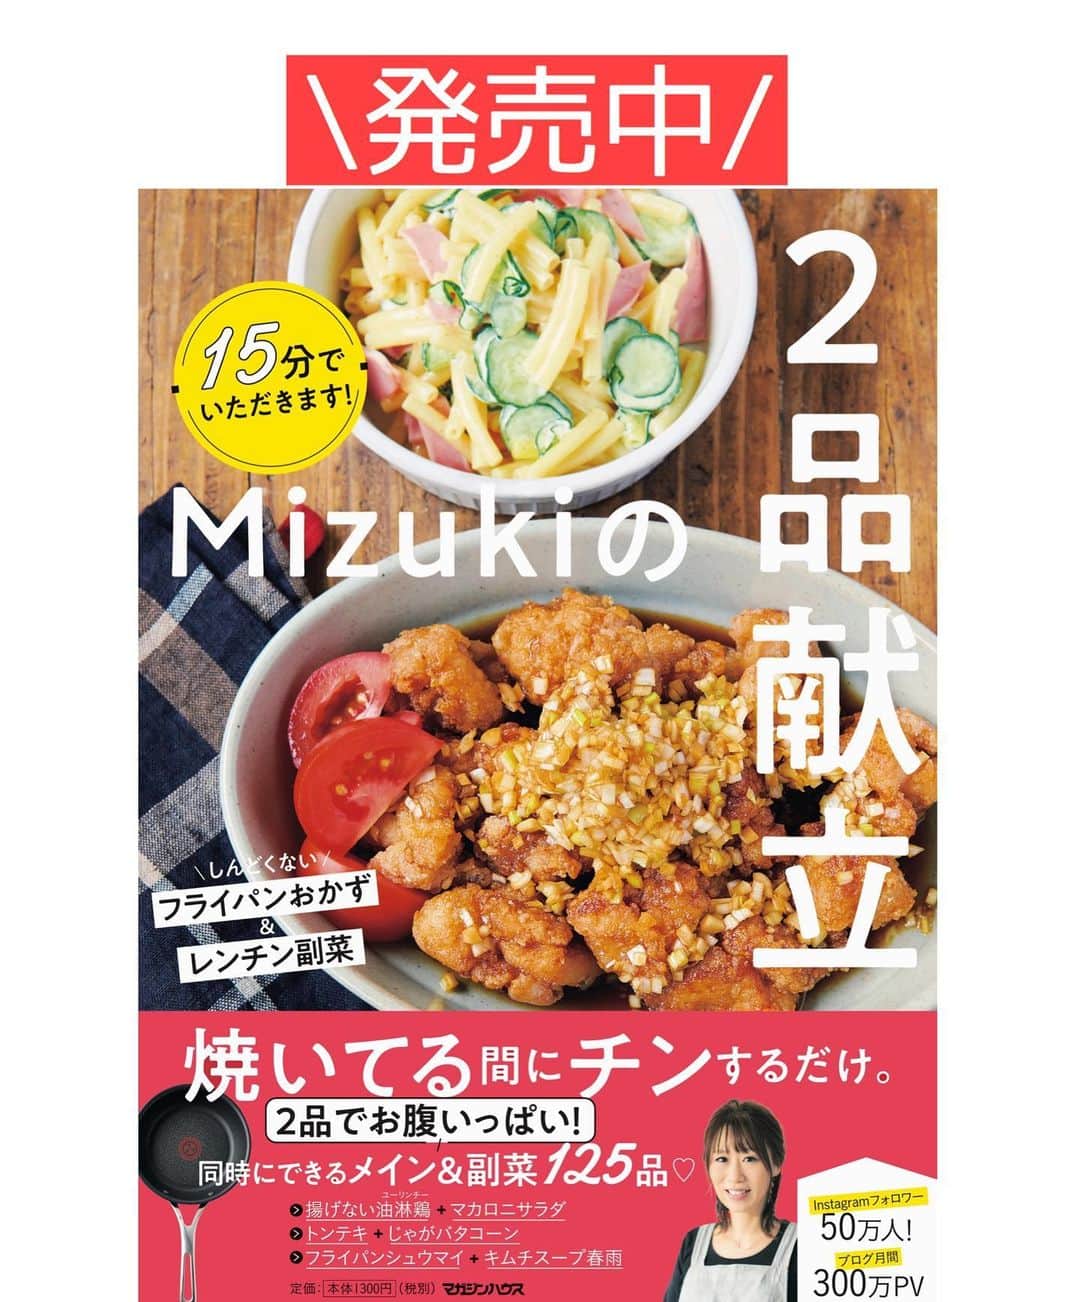 Mizuki【料理ブロガー・簡単レシピ】さんのインスタグラム写真 - (Mizuki【料理ブロガー・簡単レシピ】Instagram)「・﻿ 【#レシピ 】ーーーーーーーーーーー﻿ ♡あっさりジューシー！焼き餃子♡﻿ ーーーーーーーーーーーーーーーーー﻿ ﻿ ﻿ ﻿ おはようございます(*^^*)﻿ ﻿ 今日ご紹介させていただくのは﻿ うちの定番 \\ 焼き餃子 //﻿ ﻿ あっさりとジューシーな味わいで﻿ いくらでも食べられますよ(*´艸`)﻿ キャベツは塩揉みなしで加え﻿ 甘みと食感を楽しみます♡♡﻿ ﻿ とっても簡単にできるので﻿ よかったらお試し下さいね(*^^*)﻿ もちろんコスパも抜群です♩﻿ ﻿ ﻿ ﻿ ＿＿＿＿＿＿＿＿＿＿＿＿＿＿＿＿＿＿＿＿﻿ 【25個分】﻿ 豚ひき肉...150g﻿ キャベツ..150g﻿ ニラ...1/3束﻿ ●酒...大1﻿ ●鶏がらスープ・醤油・ごま油...各小1﻿ ●にんにく・生姜...各チューブ2cm﻿ ●塩こしょう...少々﻿ 餃子の皮...25枚﻿ サラダ油...小1﻿ (仕上げ用)ごま油...小1﻿ ﻿ ﻿ 1.キャベツはみじん切り、ニラは小口切りにする。ボウルにひき肉、キャベツ、ニラ、●を入れてよく混ぜる。﻿ 2. 餃子の皮に1をのせ、皮の縁に水をつけてひだを寄せてとじる。﻿ 3.フライパンにサラダ油を伸ばし、2を並べてから中火にかける。焼き色が付いたら水100ml(分量外)を注ぎ、蓋をして弱めの中火で5分蒸し焼きにする。﻿ 4.蓋を外し、中火にして水分を飛ばす。鍋肌から仕上げ用ごま油を加え、カリッと仕上げる。﻿ ￣￣￣￣￣￣￣￣￣￣￣￣￣￣￣￣￣￣￣￣﻿ ﻿ ﻿ ﻿ ﻿ 《ポイント》﻿ ♦︎包まず棒餃子にしても◎﻿ (参考)→#小松菜棒餃子m﻿ ♦︎餃子に器を被せ、フライパンごとひっくり返して盛り付けています(油はねに注意)☆﻿ ♦︎酢醤油、酢こしょう、ポン酢、ラー油など、お好みのたれで召し上がれ♩﻿ ﻿ ﻿ ﻿ ﻿ ﻿ ﻿ ﻿ ﻿ 📕新刊発売中📕﻿ 【ラクしておいしい！#1品晩ごはん 】﻿ ￣￣￣￣￣￣￣￣￣￣￣￣￣￣￣￣￣﻿ 私たちだってヘトヘトな日がある•••﻿ 毎日何品も作っていられない•••﻿ もうごはんに悩みたくない😢﻿ そんな時、1品ごはんはいかがでしょう？﻿ というご提案です✨﻿ ﻿ 【1品ごはん】は﻿ 副菜いらずで全てがシンプル！﻿ ￣￣￣￣￣￣￣￣￣￣￣￣￣￣￣￣￣￣﻿ 一品つくるだけでいいから﻿ 献立を考えなくてよし！﻿ ￣￣￣￣￣￣￣￣￣￣￣￣￣￣￣￣￣￣﻿ 悩まない、疲れない、﻿ 気力や時間がなくてもなんとかなる！﻿ ￣￣￣￣￣￣￣￣￣￣￣￣￣￣￣￣￣￣﻿ そんな頼りになる﻿ 便利なお助けごはんです☺️💕﻿ (ハイライトに🔗貼っています✨)﻿ ￣￣￣￣￣￣￣￣￣￣￣￣￣￣￣￣￣﻿ ﻿ ﻿ ﻿ ﻿ ﻿ ⭐️発売中⭐️﻿ ＿＿＿＿＿＿＿＿＿＿＿＿＿＿＿＿＿＿﻿ しんどくない献立、考えました♩﻿ \15分でいただきます/﻿ 📕#Mizukiの2品献立 📕﻿ ﻿ 和食をもっとカジュアルに♩﻿ \毎日のごはんがラクになる/﻿ 📘#Mizukiの今どき和食 📘﻿ ﻿ ホケミレシピの決定版♩﻿ \はじめてでも失敗しない/﻿ 📙ホットケーキミックスのお菓子 📙﻿ ﻿ NHKまる得マガジンテキスト☆﻿ ホットケーキミックスで﻿ 📗絶品おやつ&意外なランチ📗﻿ ￣￣￣￣￣￣￣￣￣￣￣￣￣￣￣￣￣￣﻿ ﻿ ﻿ ﻿ ＿＿＿＿＿＿＿＿＿＿＿＿＿＿＿＿＿＿﻿ レシピを作って下さった際や﻿ レシピ本についてのご投稿には﻿ タグ付け( @mizuki_31cafe )して﻿ お知らせいただけると嬉しいです😊💕﻿ ￣￣￣￣￣￣￣￣￣￣￣￣￣￣￣￣￣￣﻿ ﻿ ﻿ ﻿ ﻿ #餃子#定番#豚ひき肉#キャベツ#Mizuki#簡単レシピ#時短レシピ#節約レシピ#料理#フーディーテーブル#マカロニメイト#おうちごはん#デリスタグラマー#料理好きな人と繋がりたい#料理記録#おうちごはんlover#写真好きな人と繋がりたい#foodpic#cooking#recipe#lin_stagrammer#foodporn#yummy#f52grams#焼き餃子m」1月3日 7時53分 - mizuki_31cafe